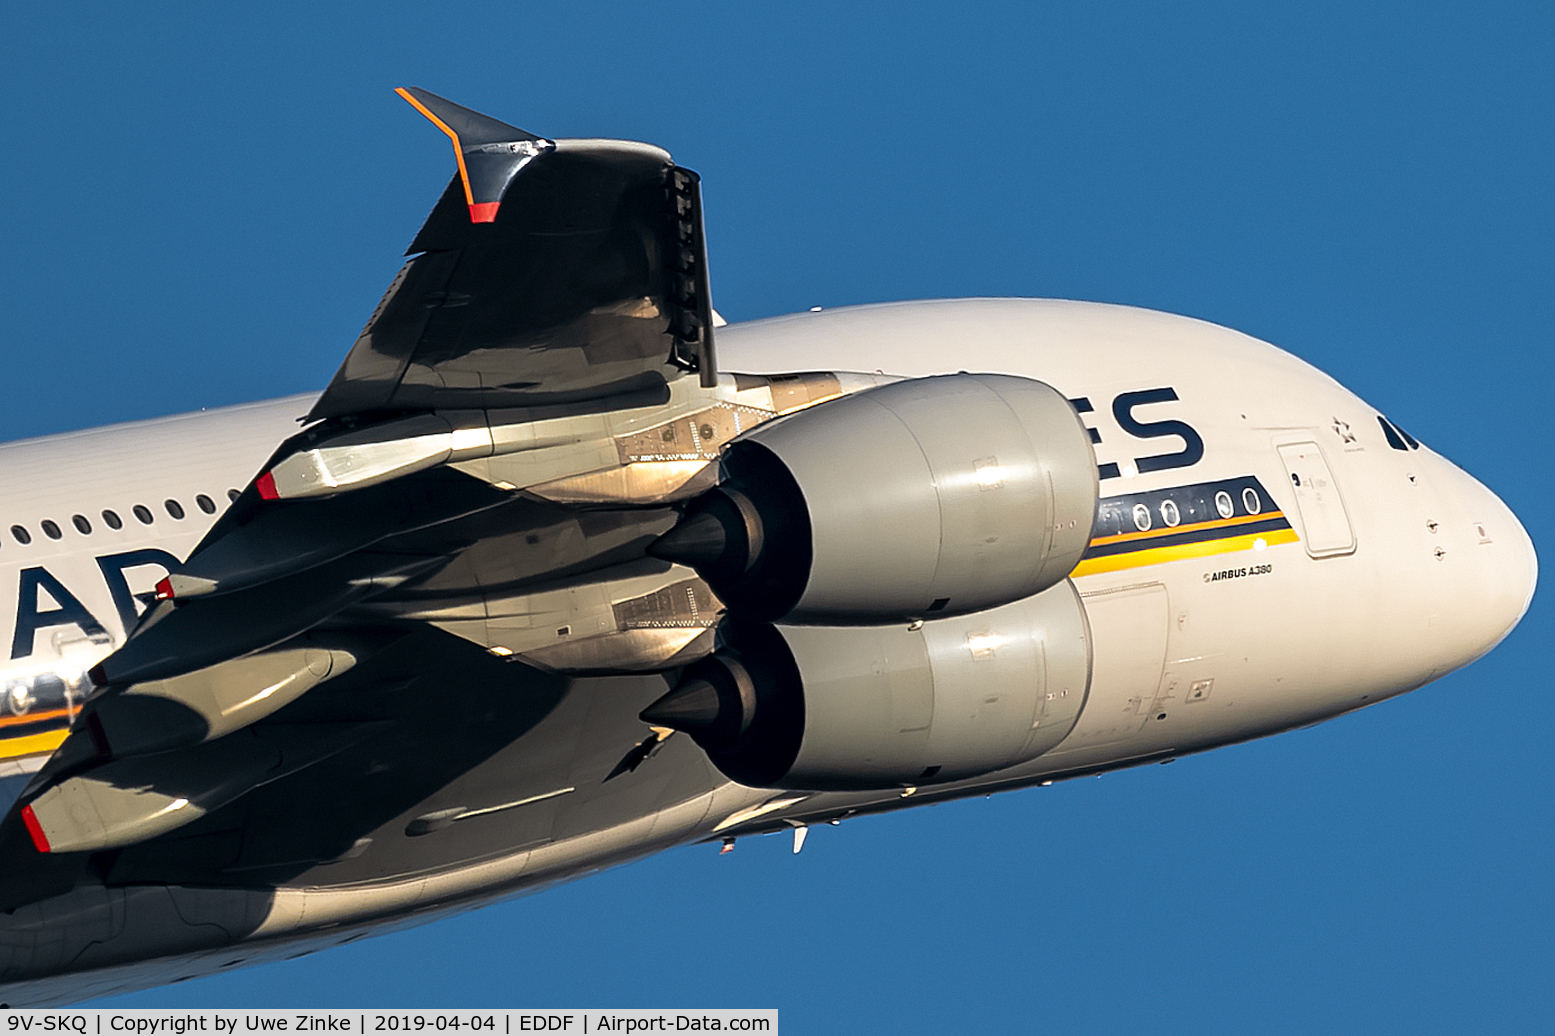 9V-SKQ, 2011 Airbus A380-841 C/N 079, full power to climb up